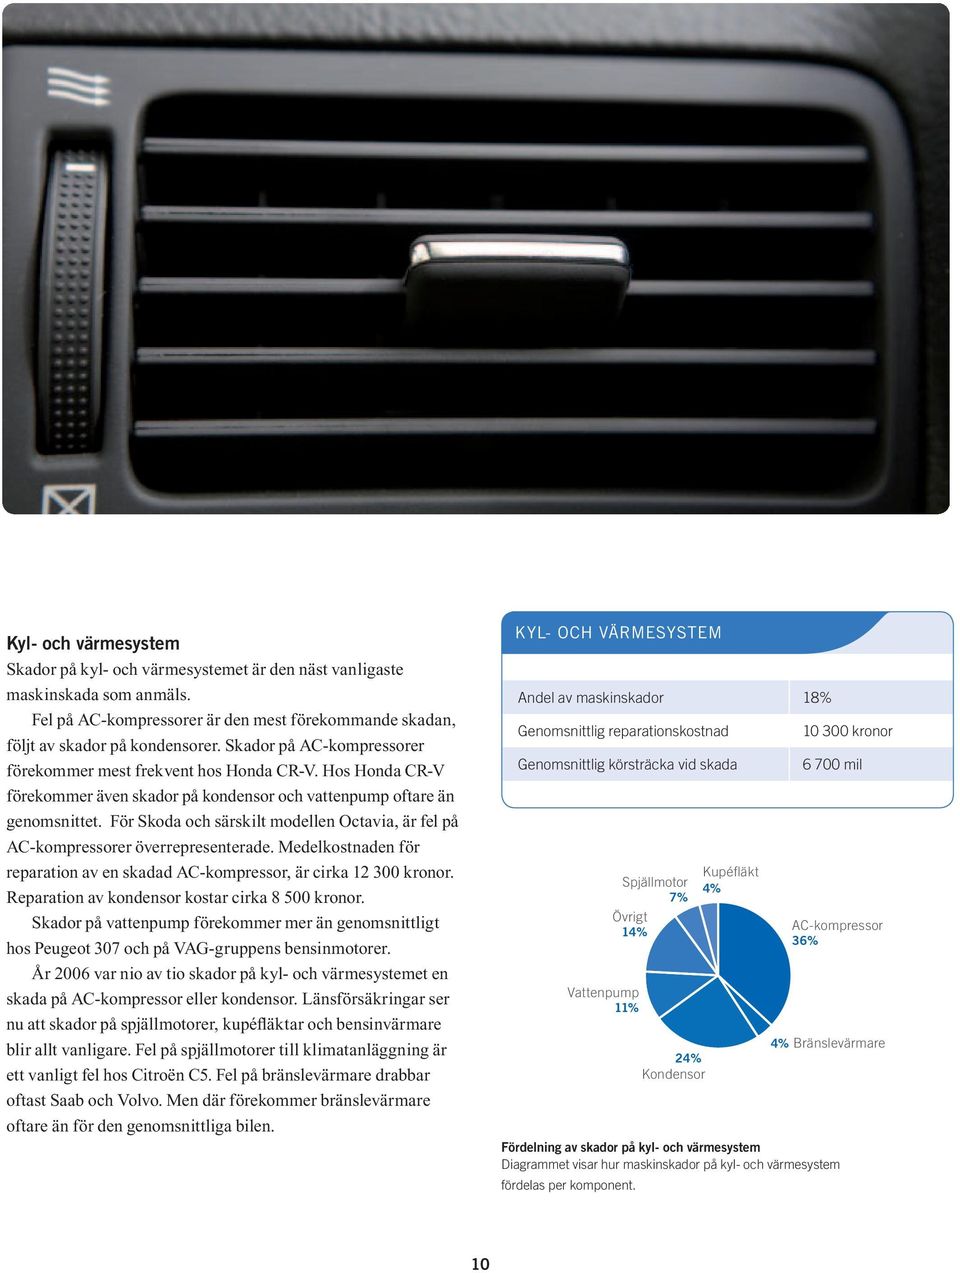 För Skoda och särskilt modellen Octavia, är fel på AC kompressorer överrepresenterade. Medelkostnaden för reparation av en skadad AC kompressor, är cirka 12 300 kronor.